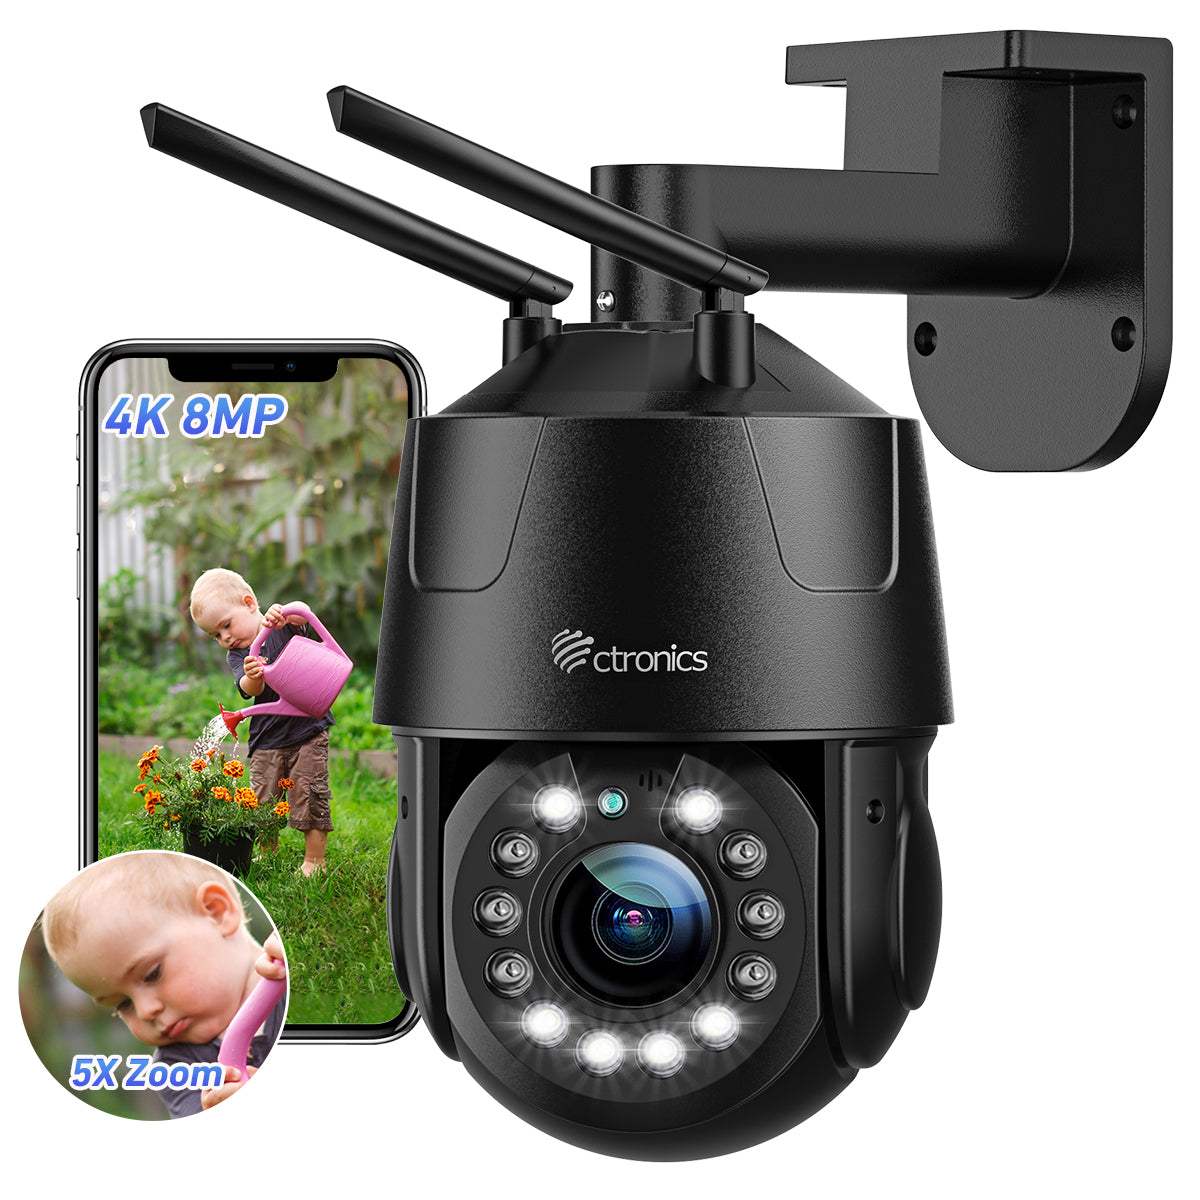 Ctronics Caméra Surveillance WiFi, 1080P IP Caméra de Surveillance  Exterieur sans Fil avec Suivi Auto Détection Humaine